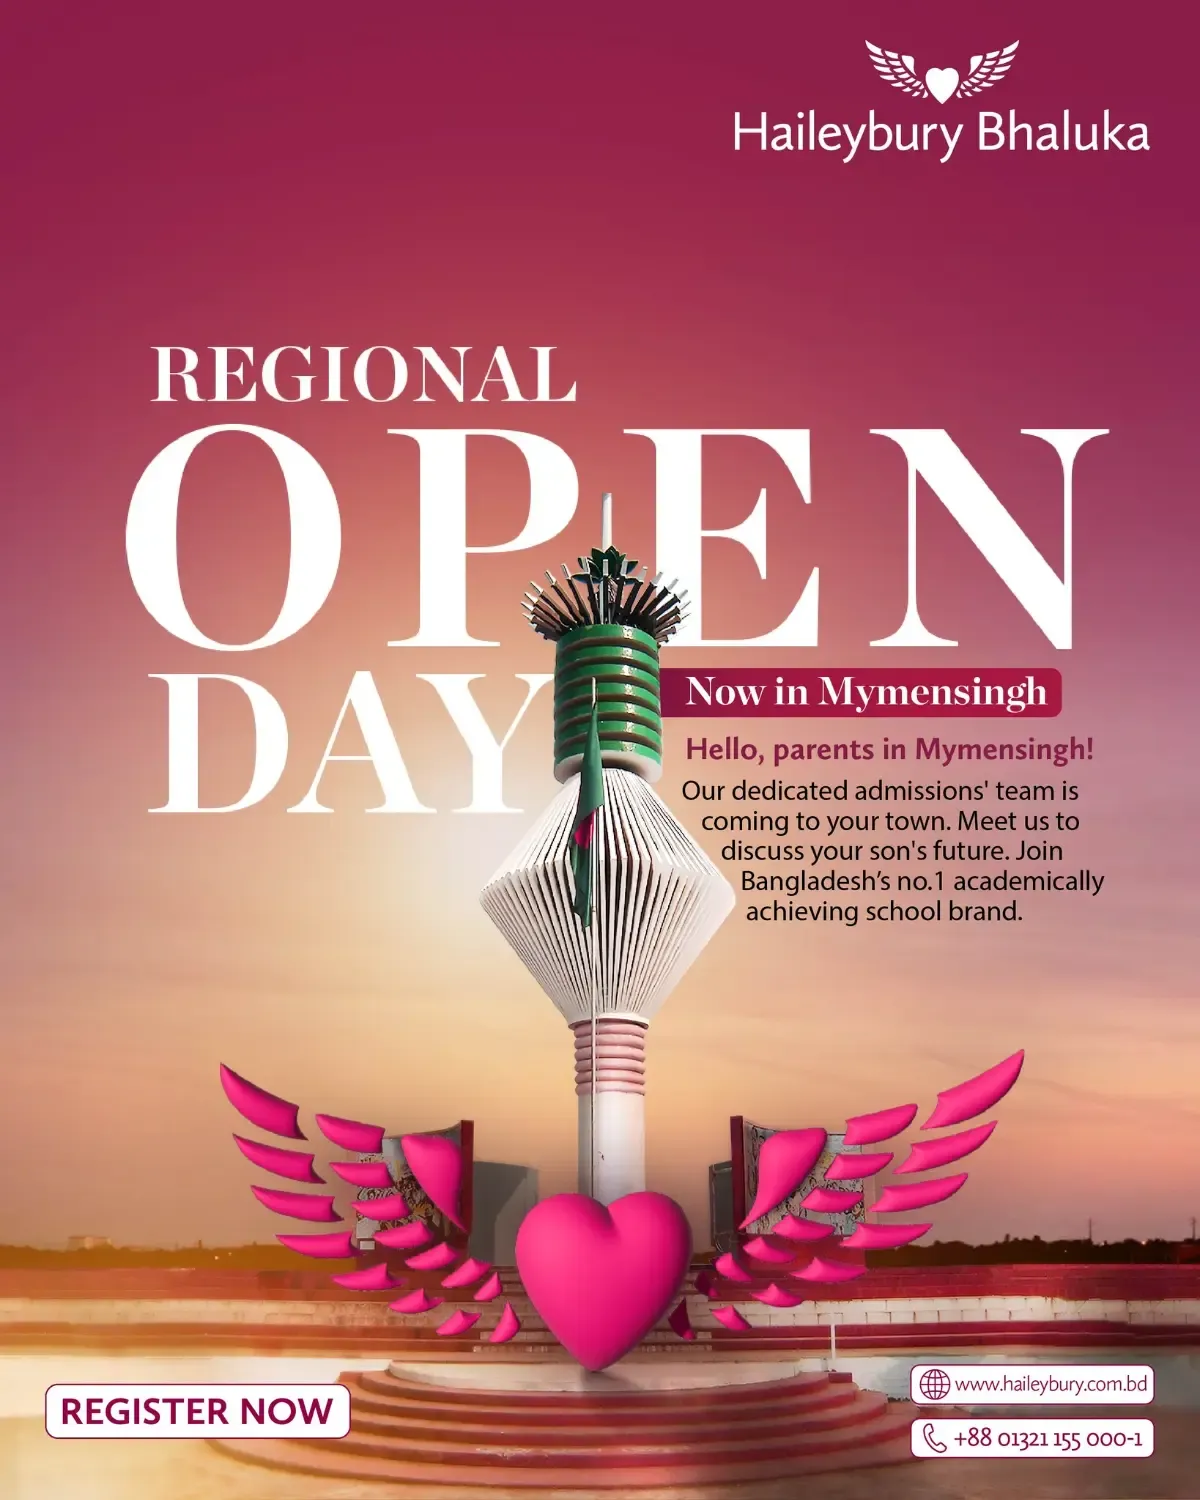 Regional Open Day in Mymensingh!